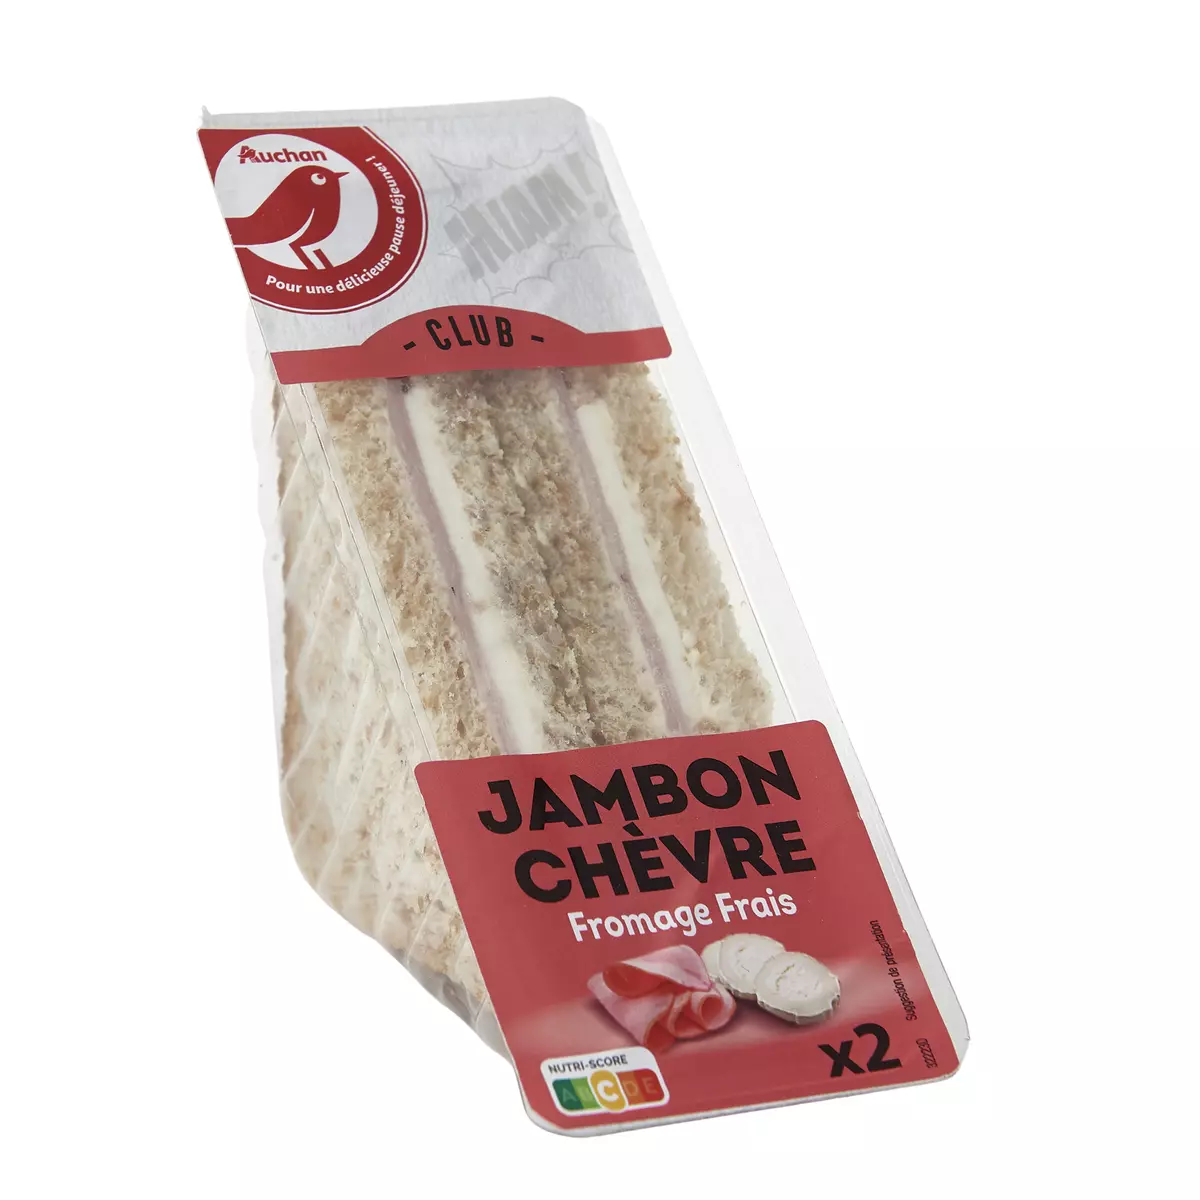 AUCHAN Sandwich club jambon chèvre fromage frais 2 pièces 145g